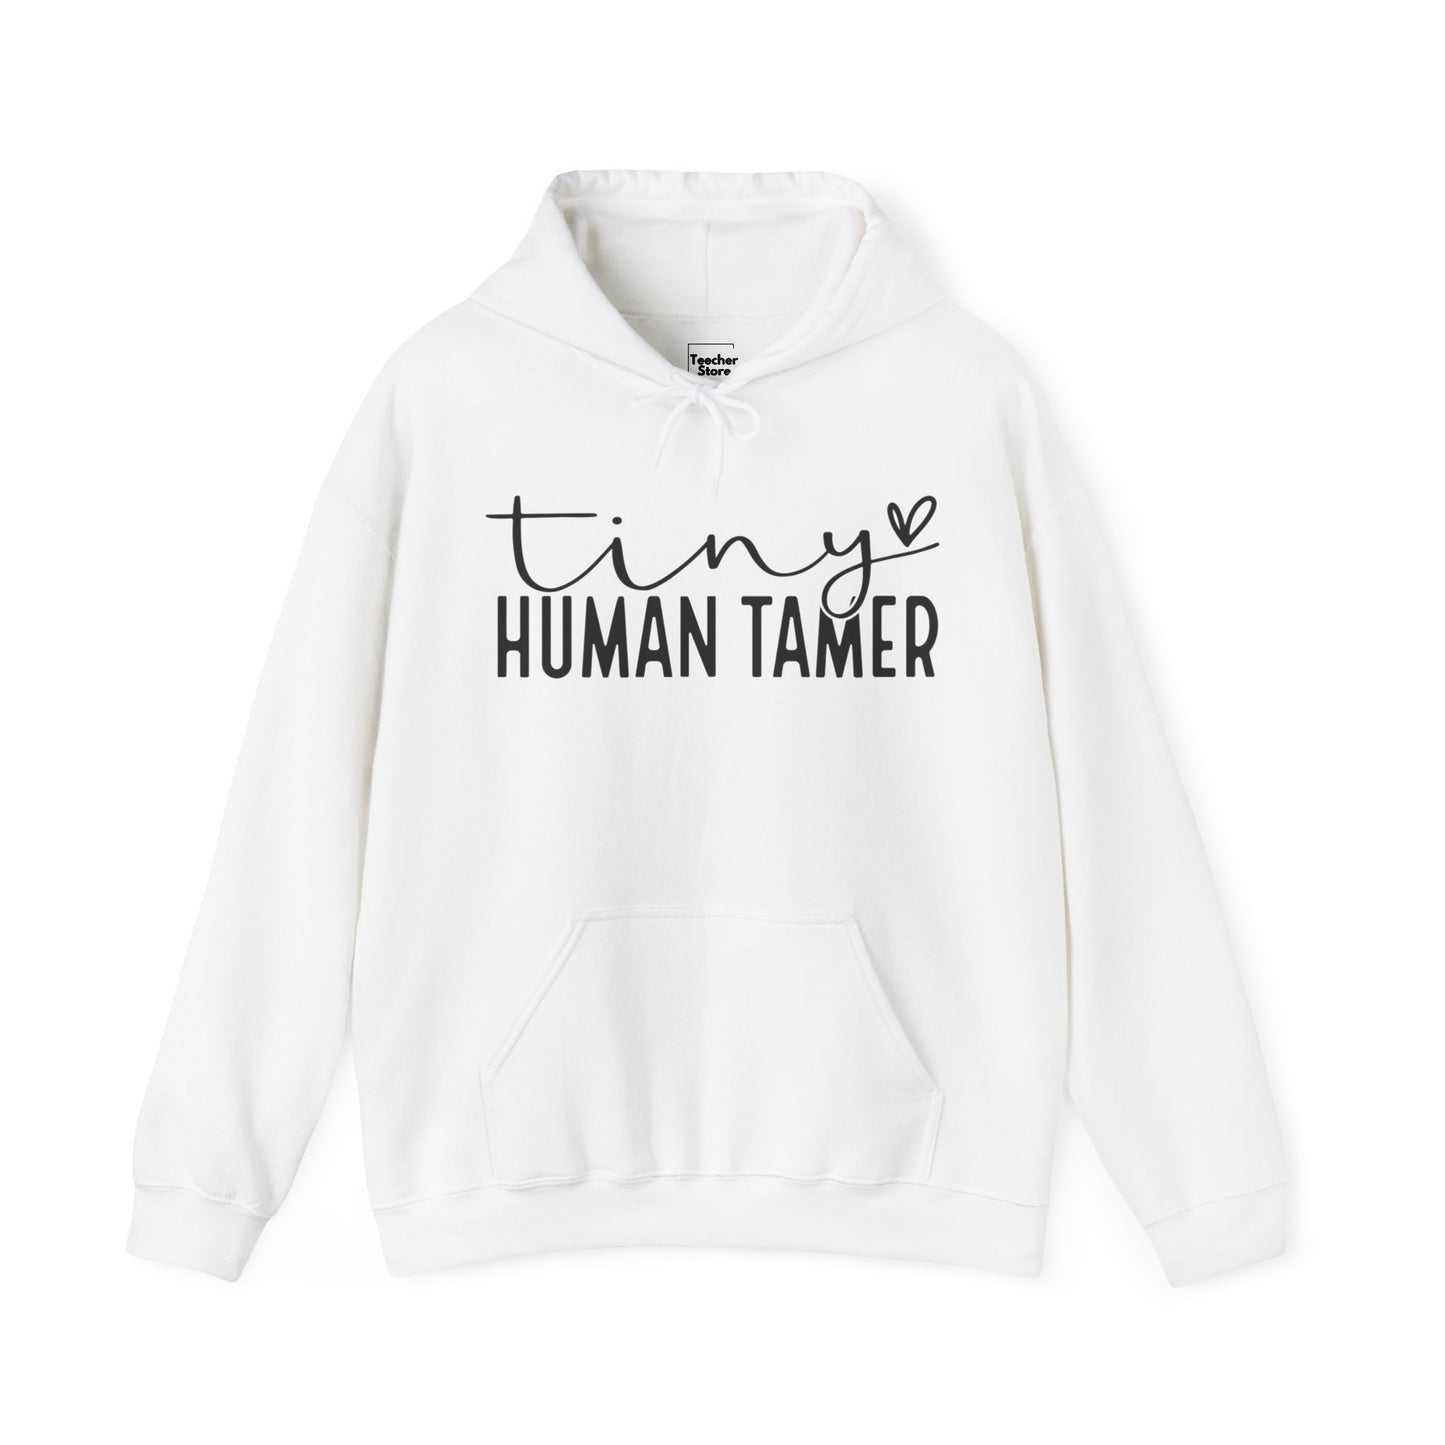 Human Tamer Hooded Sweatshirt